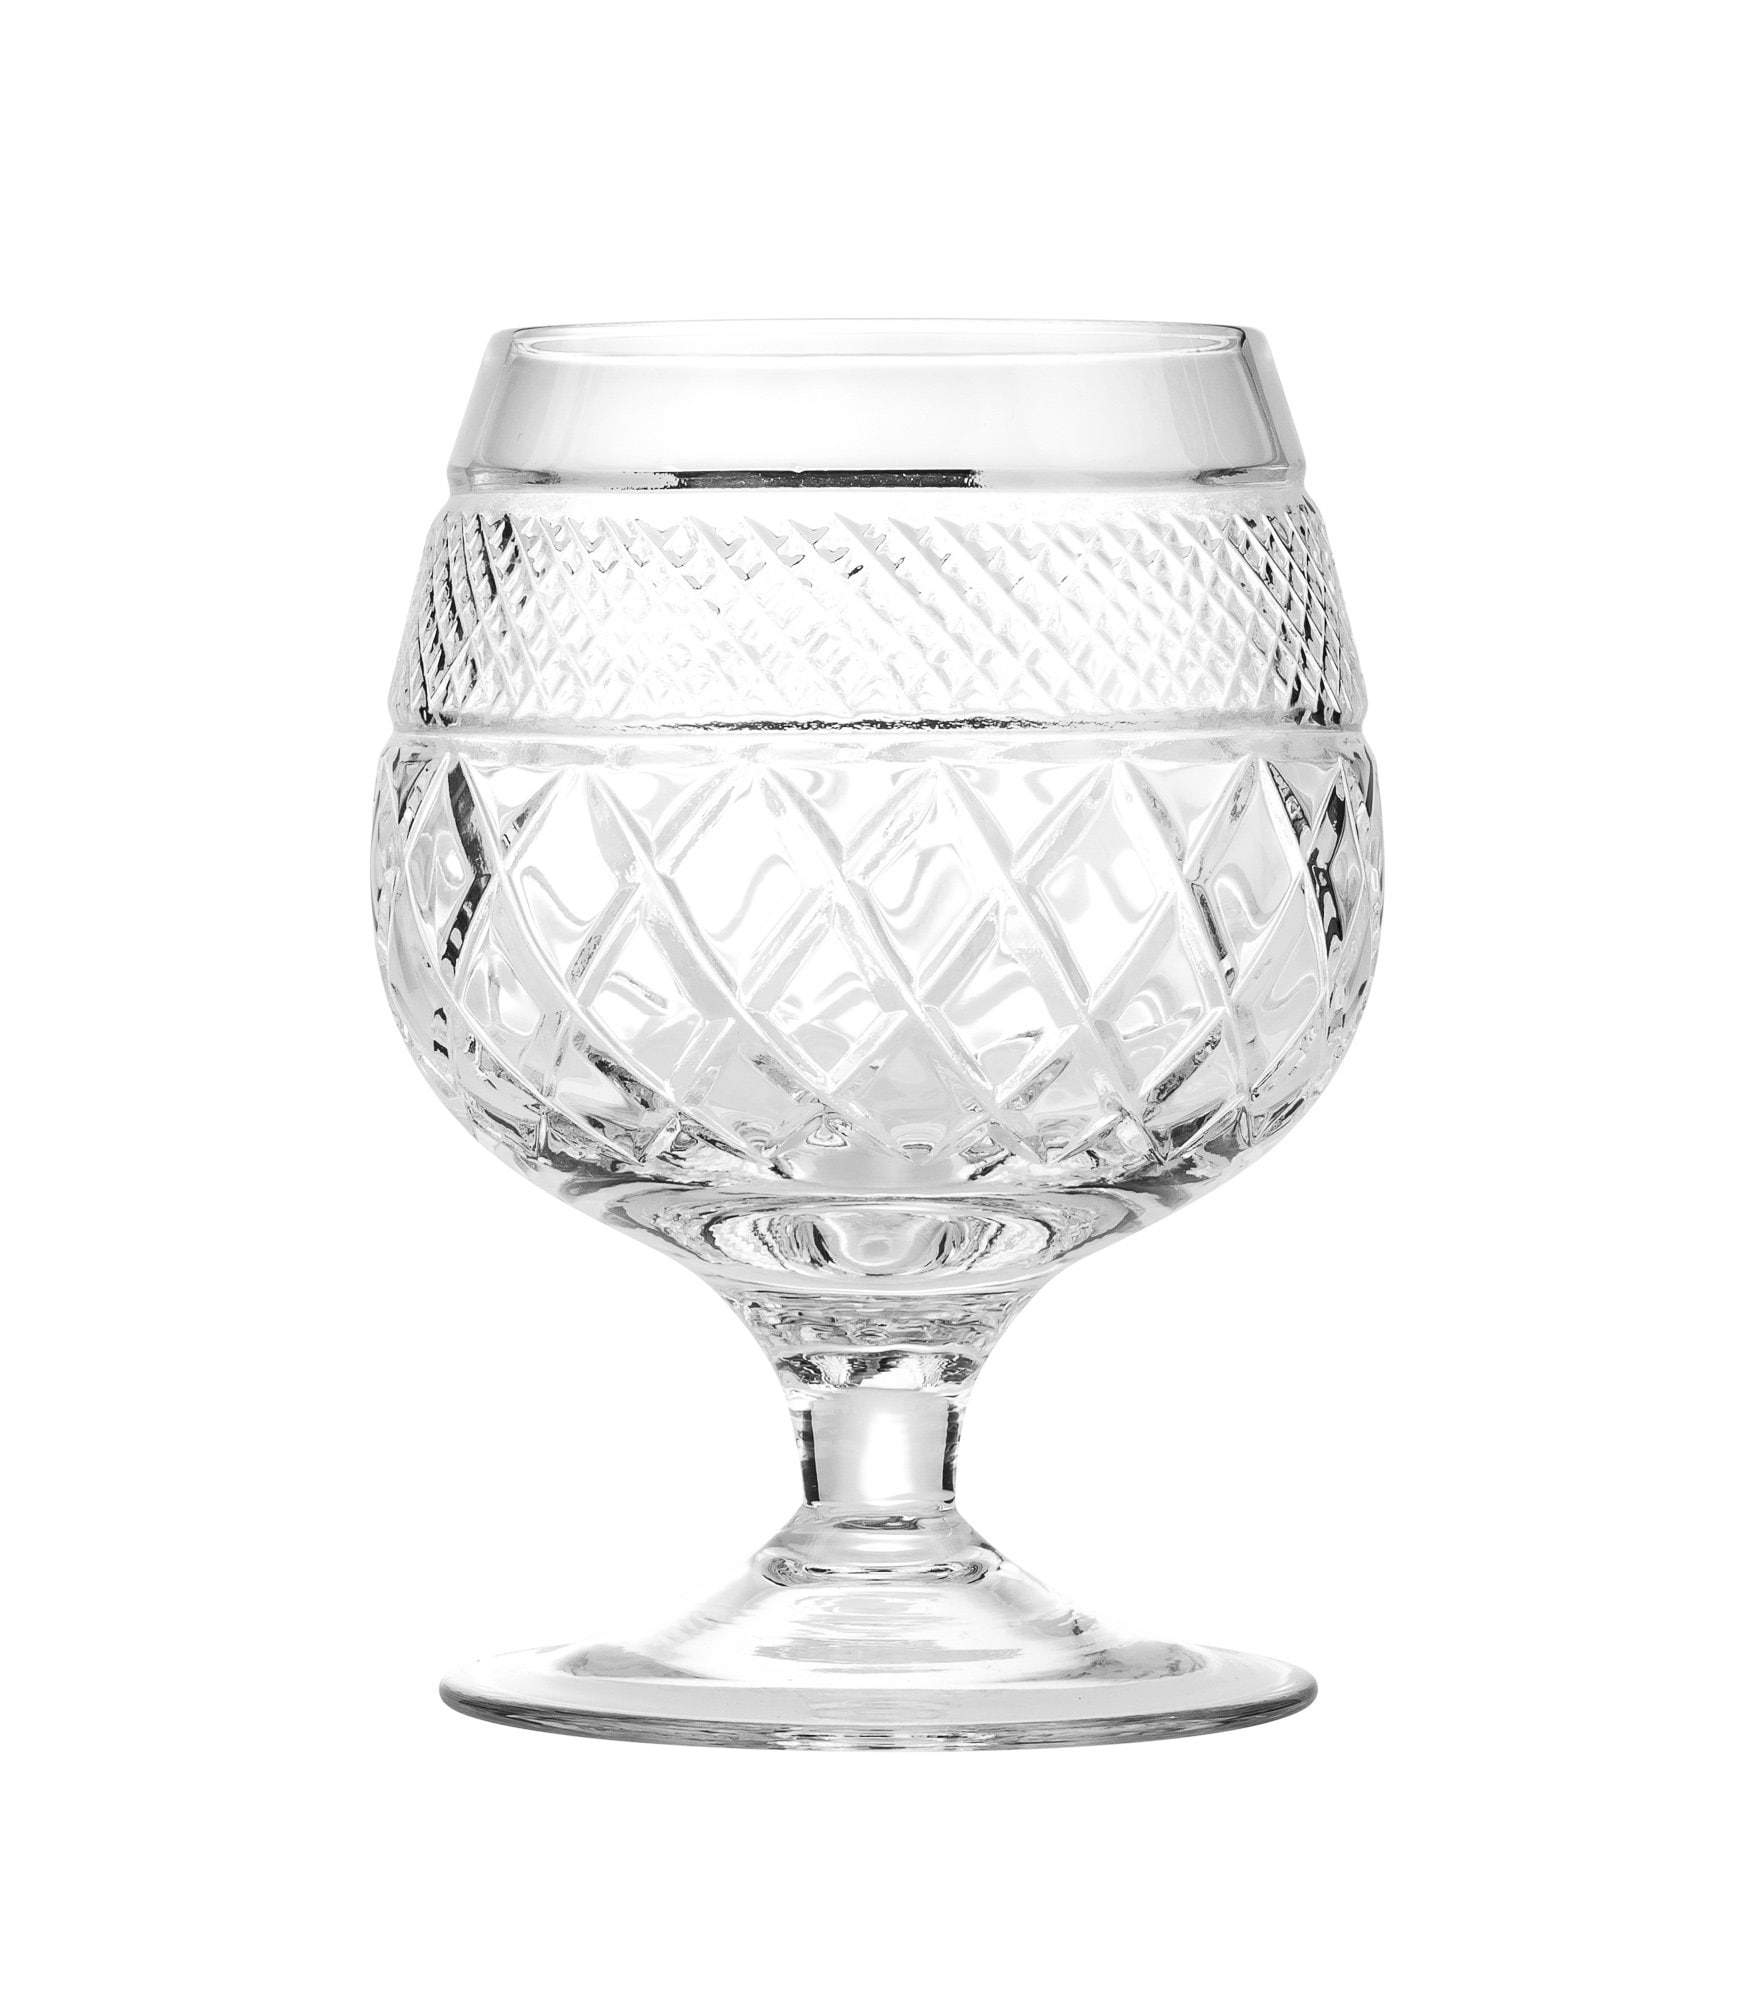 Neman 7' TM5290/221 Brandy Snifter Glass, Hand-Cut Crystal Glass Set,  6EA/SET